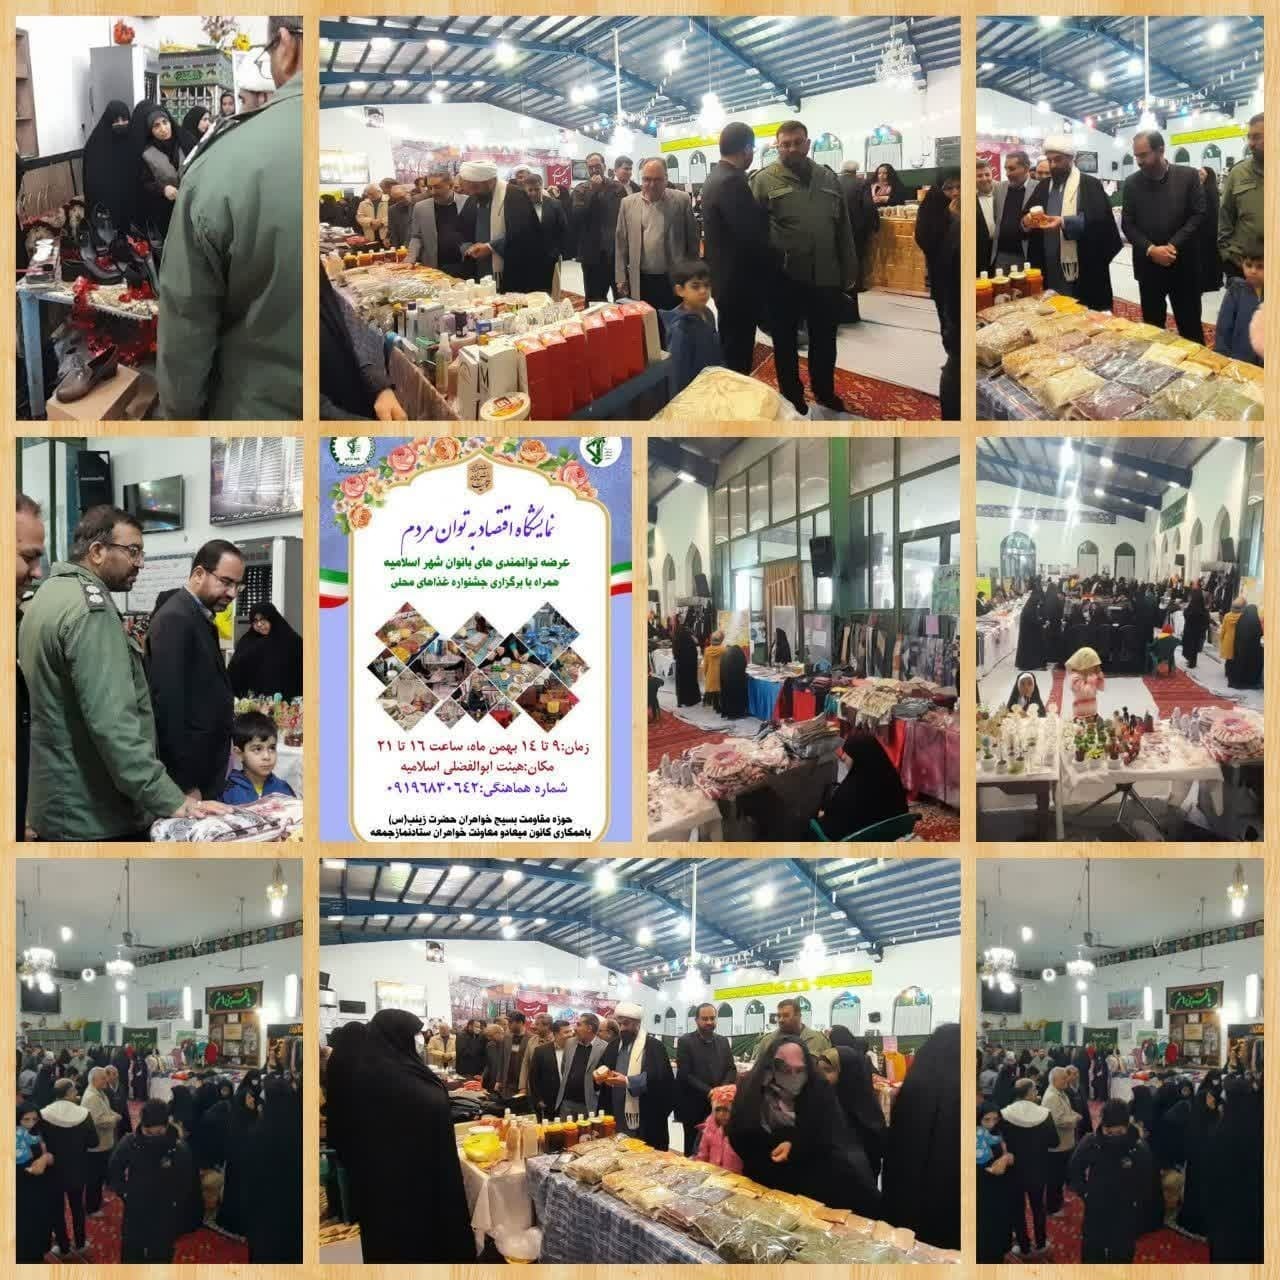 نمایشگاه به توان مردم در شهر اسلامیه فردوس برگزار شد